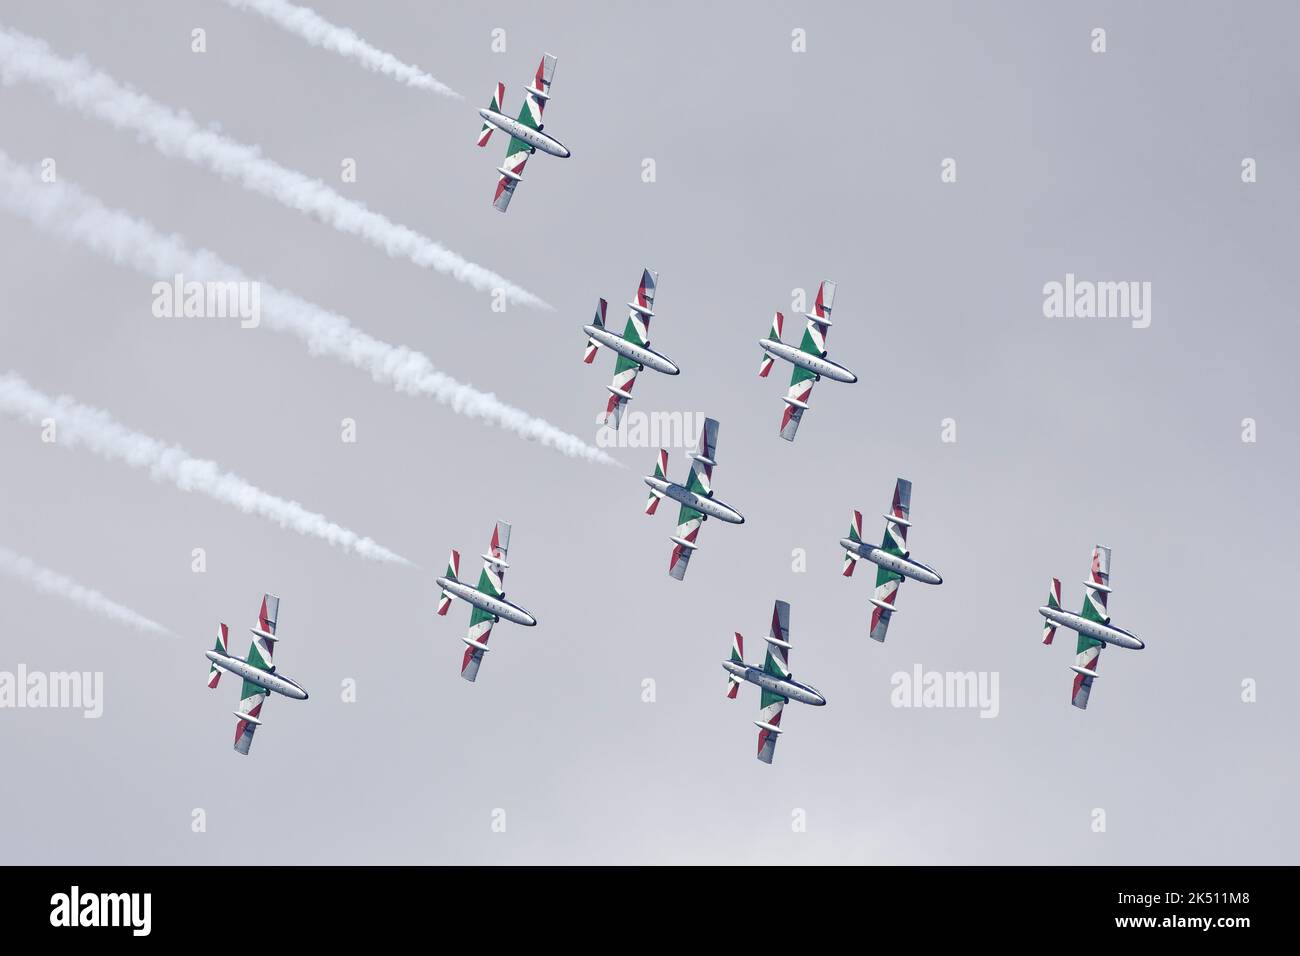 Un superbo spettacolo di volo dall'Aeronautica militare Italiana come il loro Team di esposizione Aerobatica, la frecce Tricolori sfrecciò attraverso il cielo in stretta formazione Foto Stock